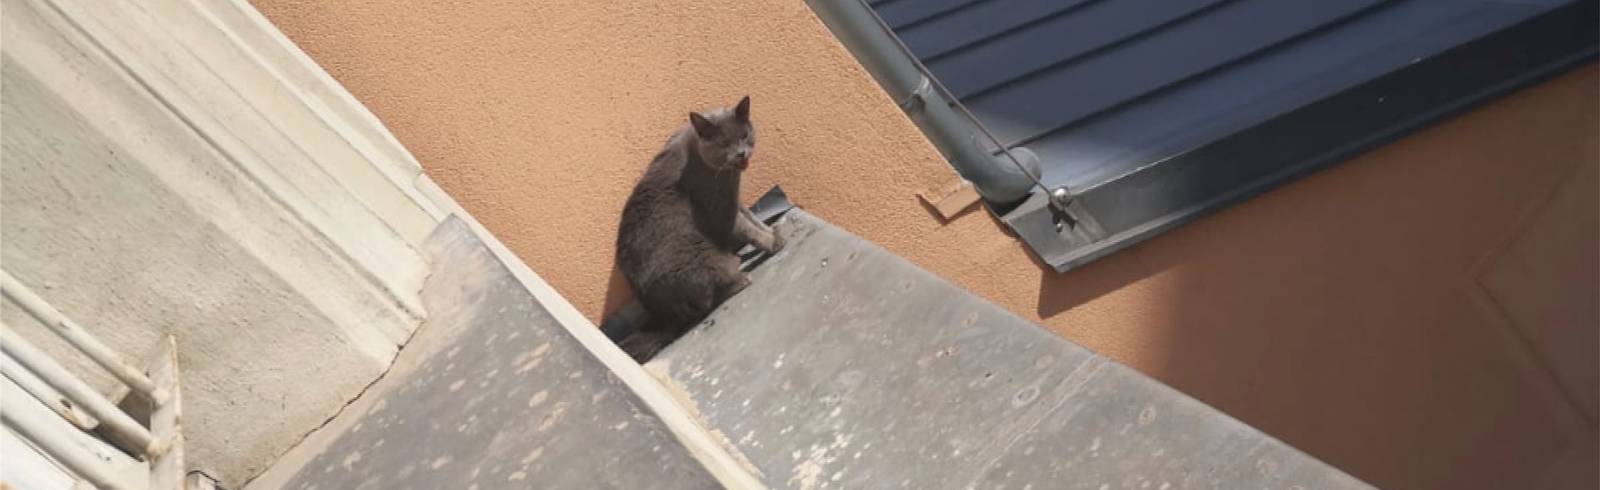 W24-Bezirksflash: Katze von Sims gerettet